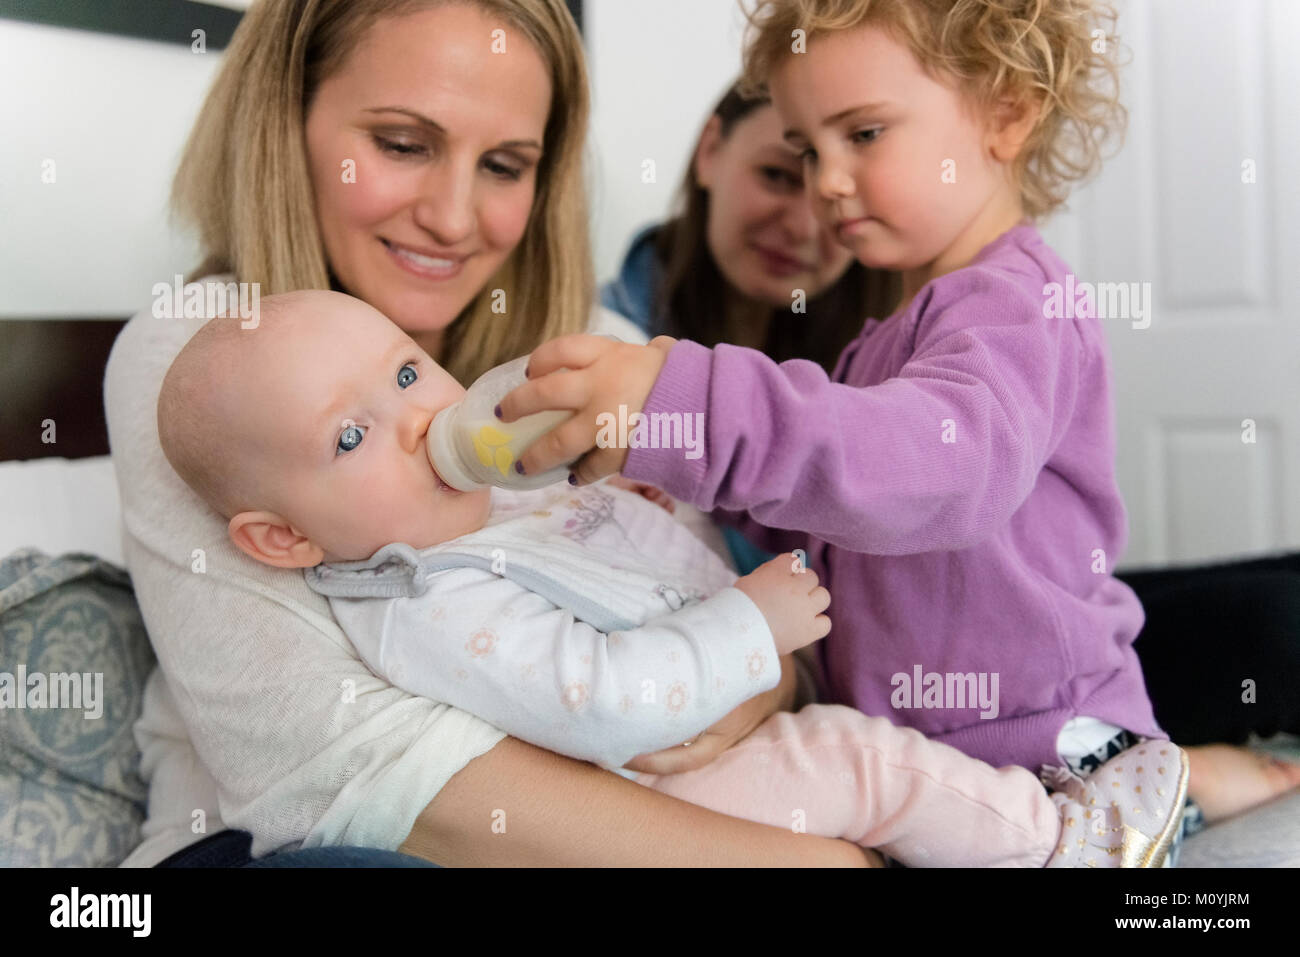 Caucasian girl feeding bottle to baby sister Stock Photo